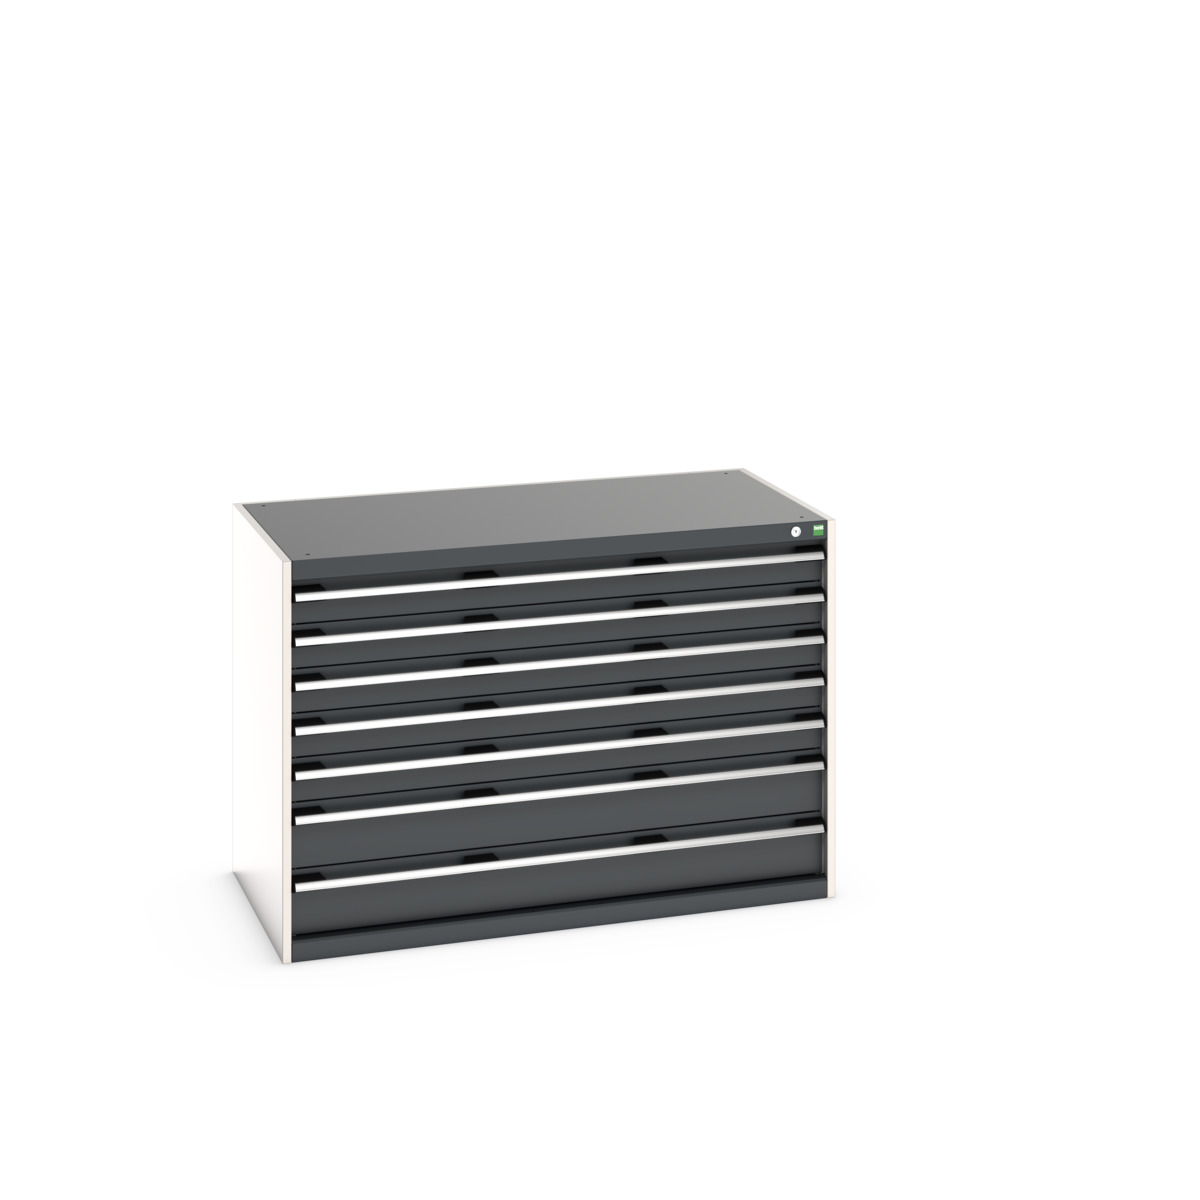 40030088.19V - cubio drawer cabinet